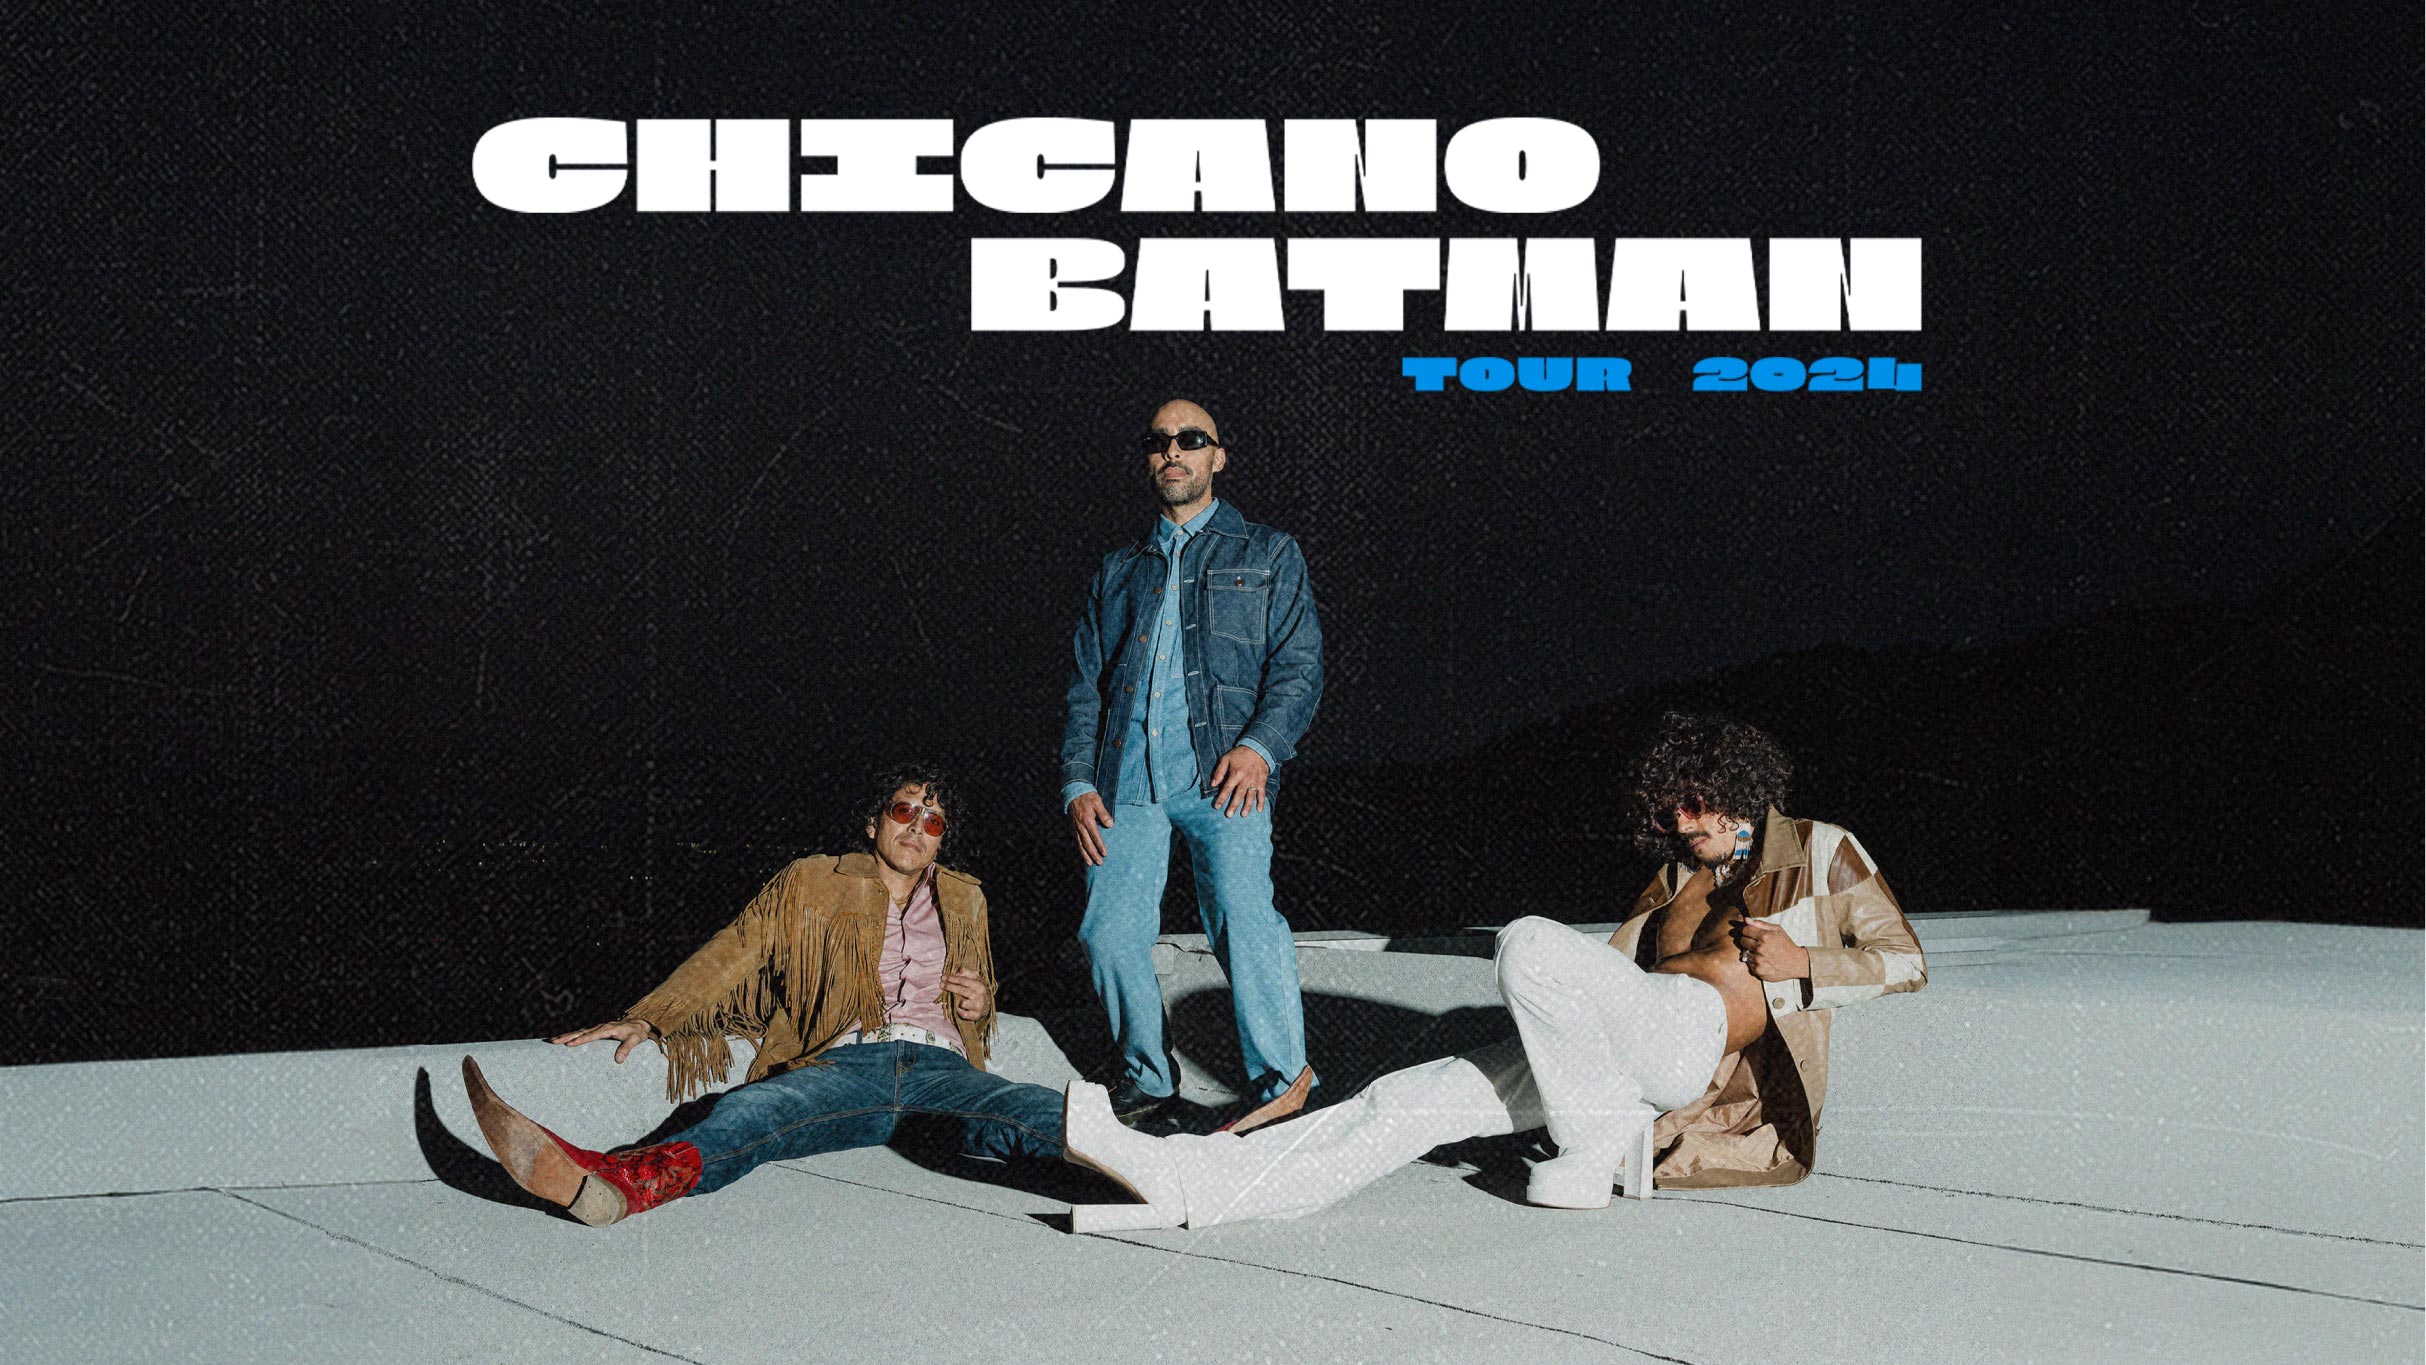 Chicano Batman in México promo photo for Preventa Citibanamex presale offer code